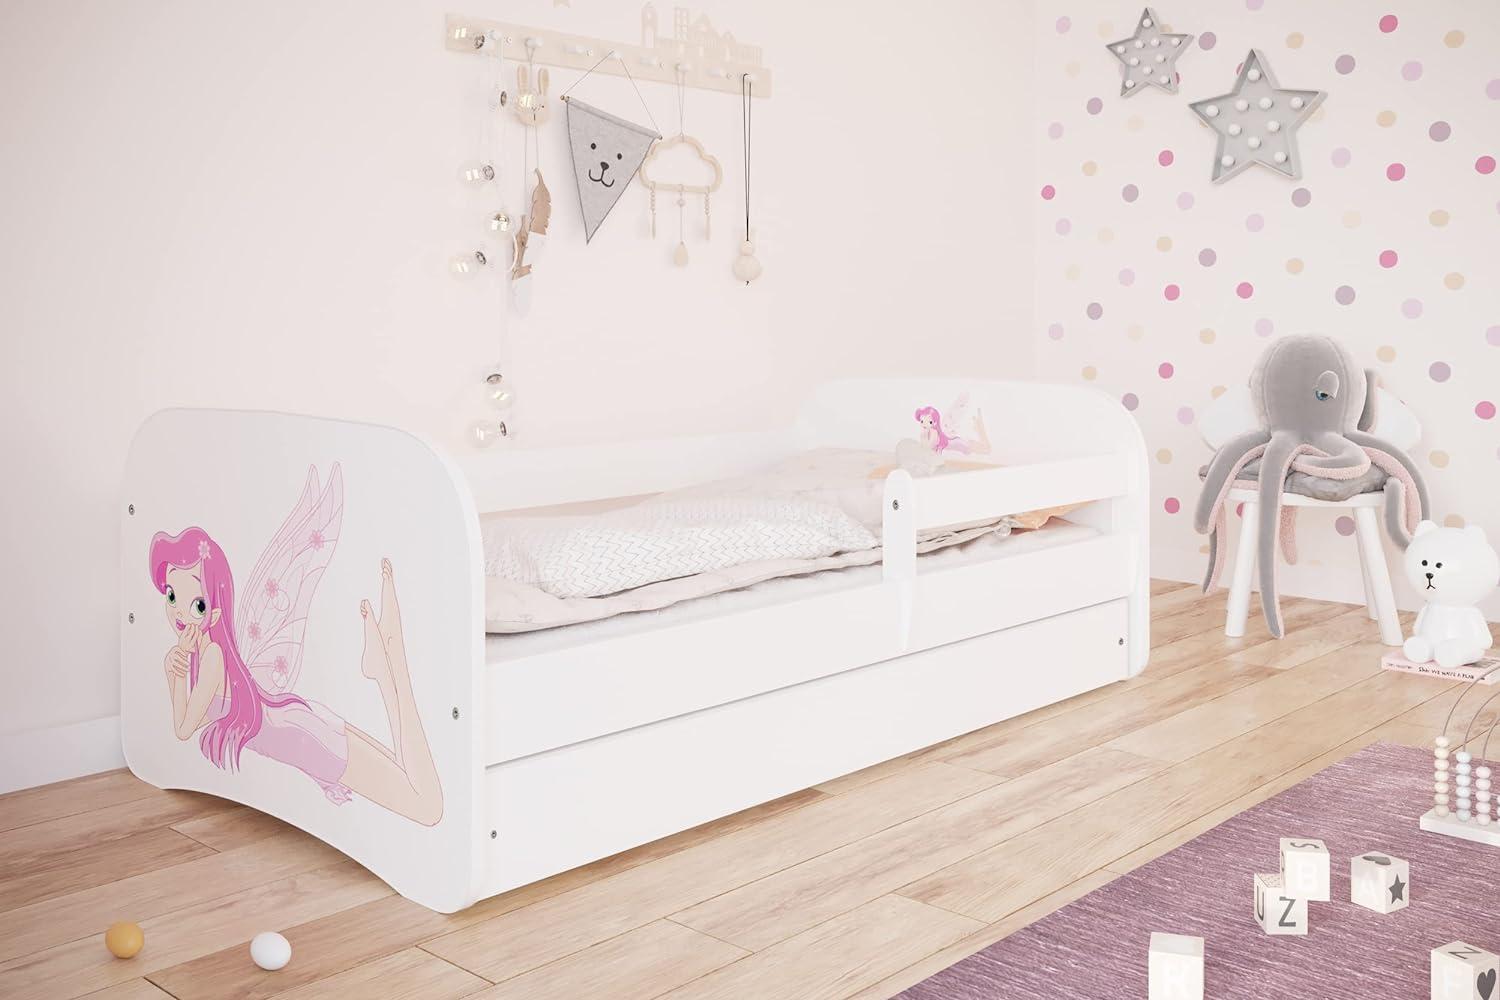 Kocot Kids 'Fee mit Flügeln' Einzelbett weiß 70x140 cm inkl. Rausfallschutz, Matratze, Schublade und Lattenrost Bild 1